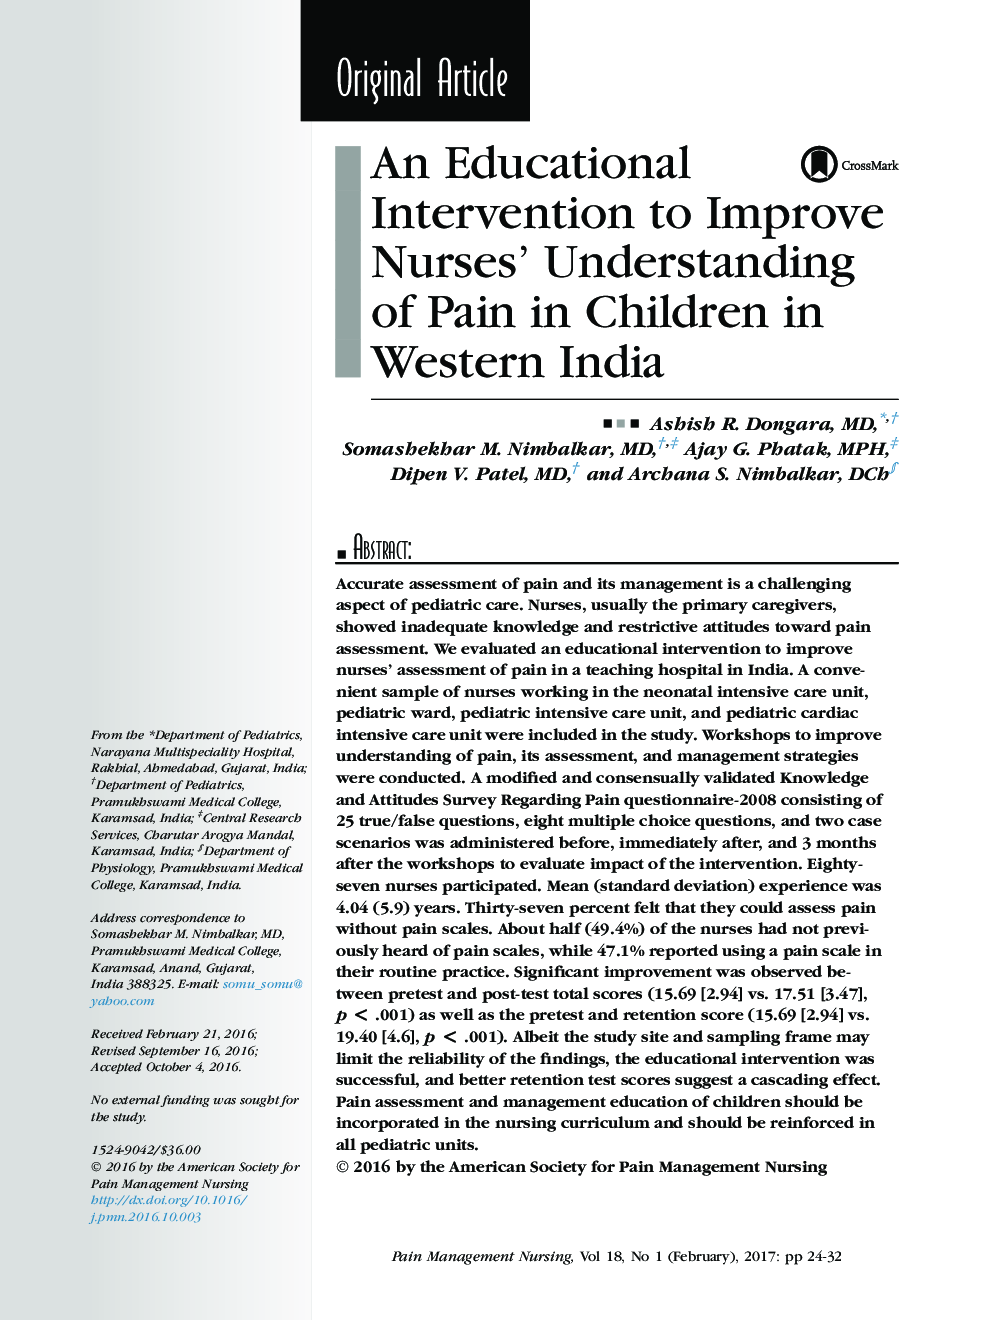 مداخله آموزشی برای بهبود آگاهی پرستاران از درد در کودکان در هند غربی 